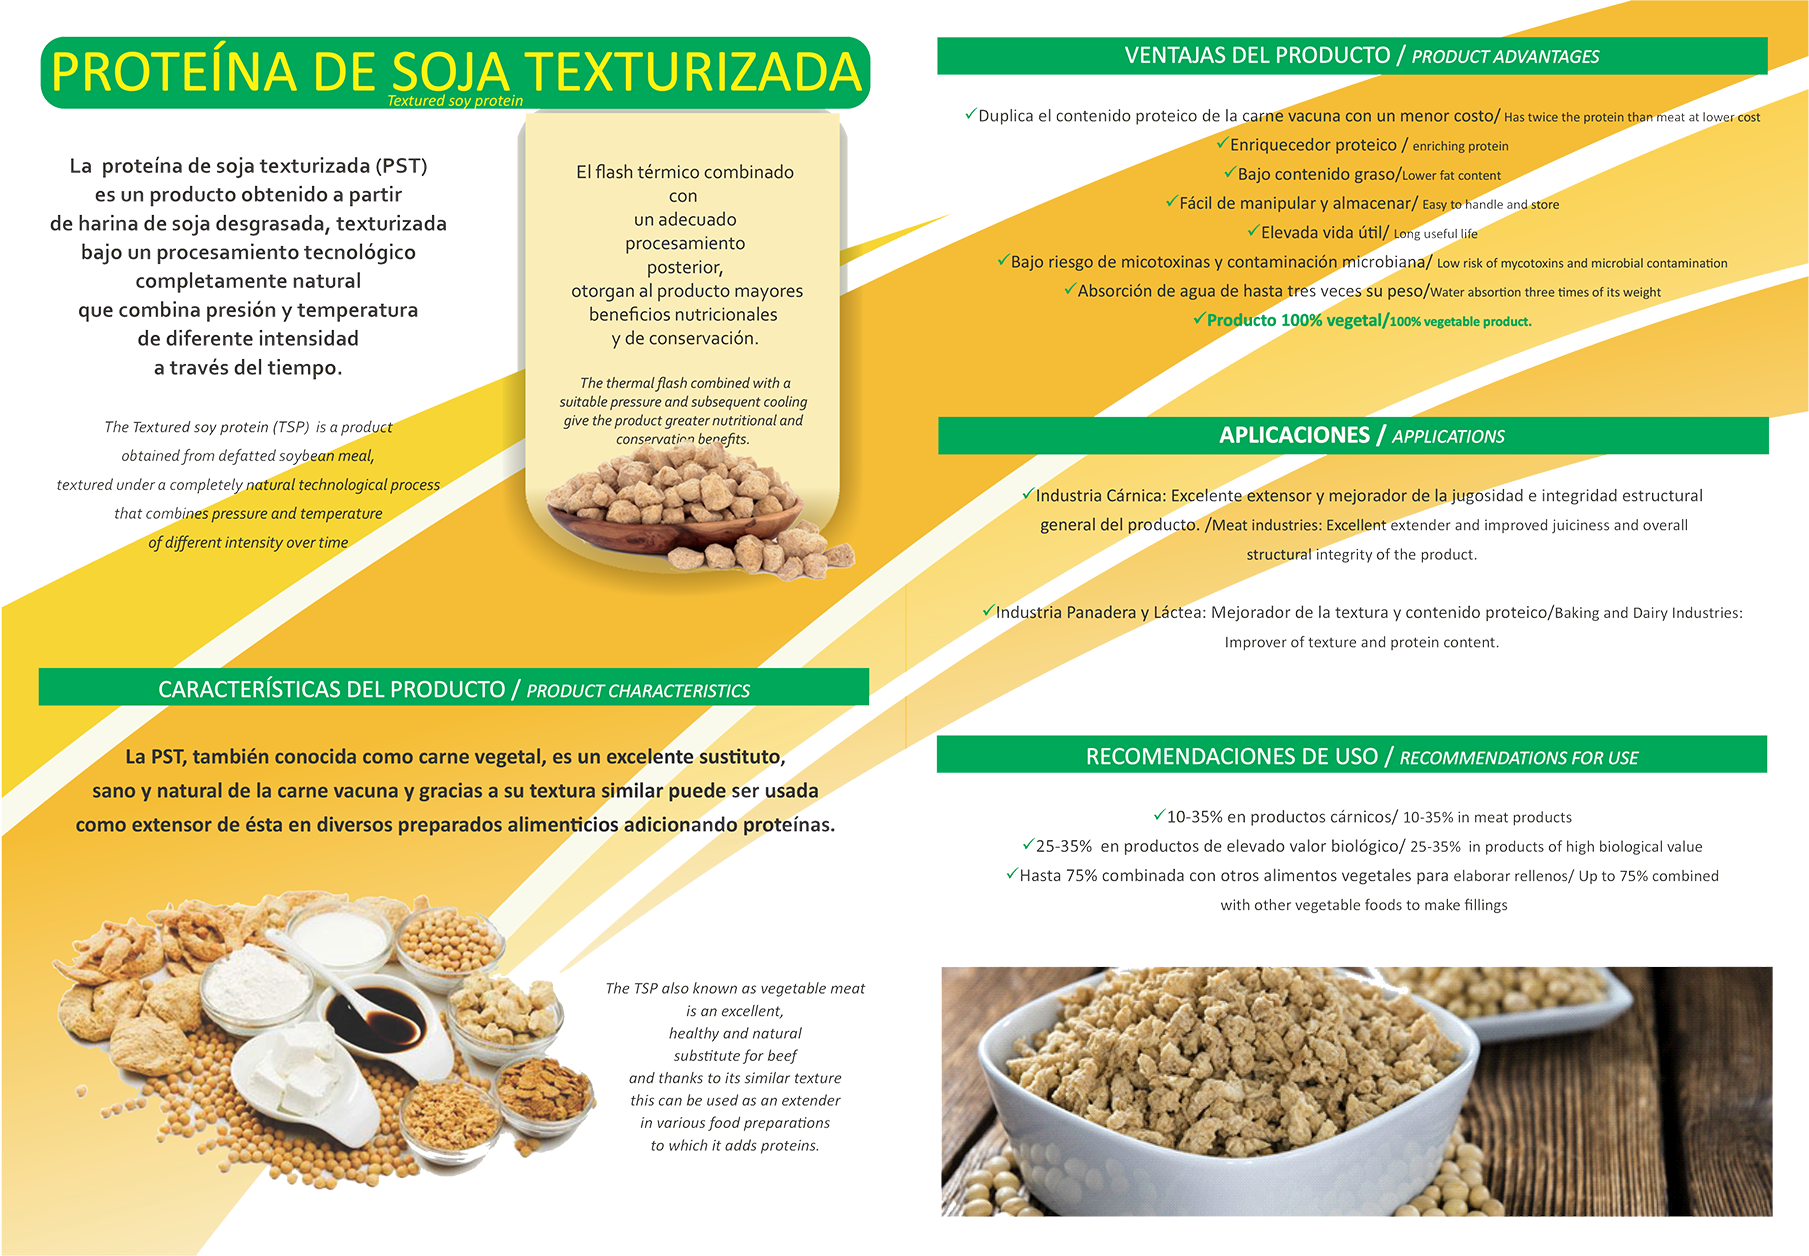 Propiedades de la soja texturizada. Vismar Natural - Productos